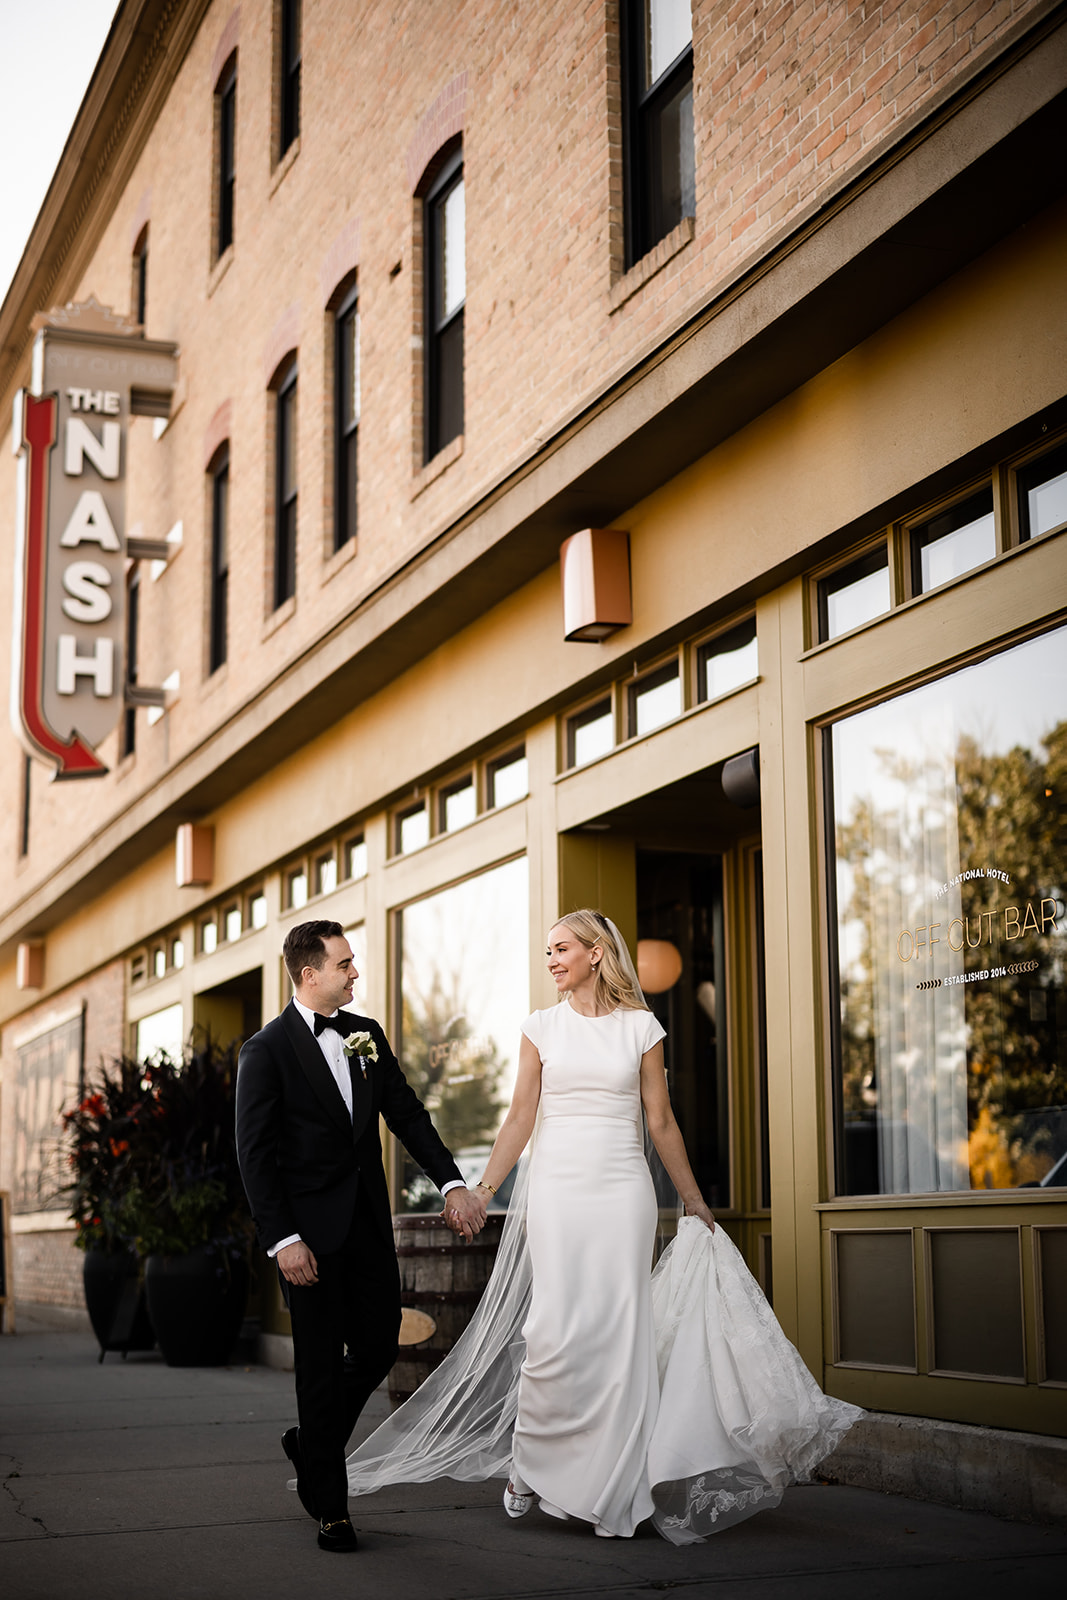 The Nash Wedding in Calgary by Tkshotz Photography